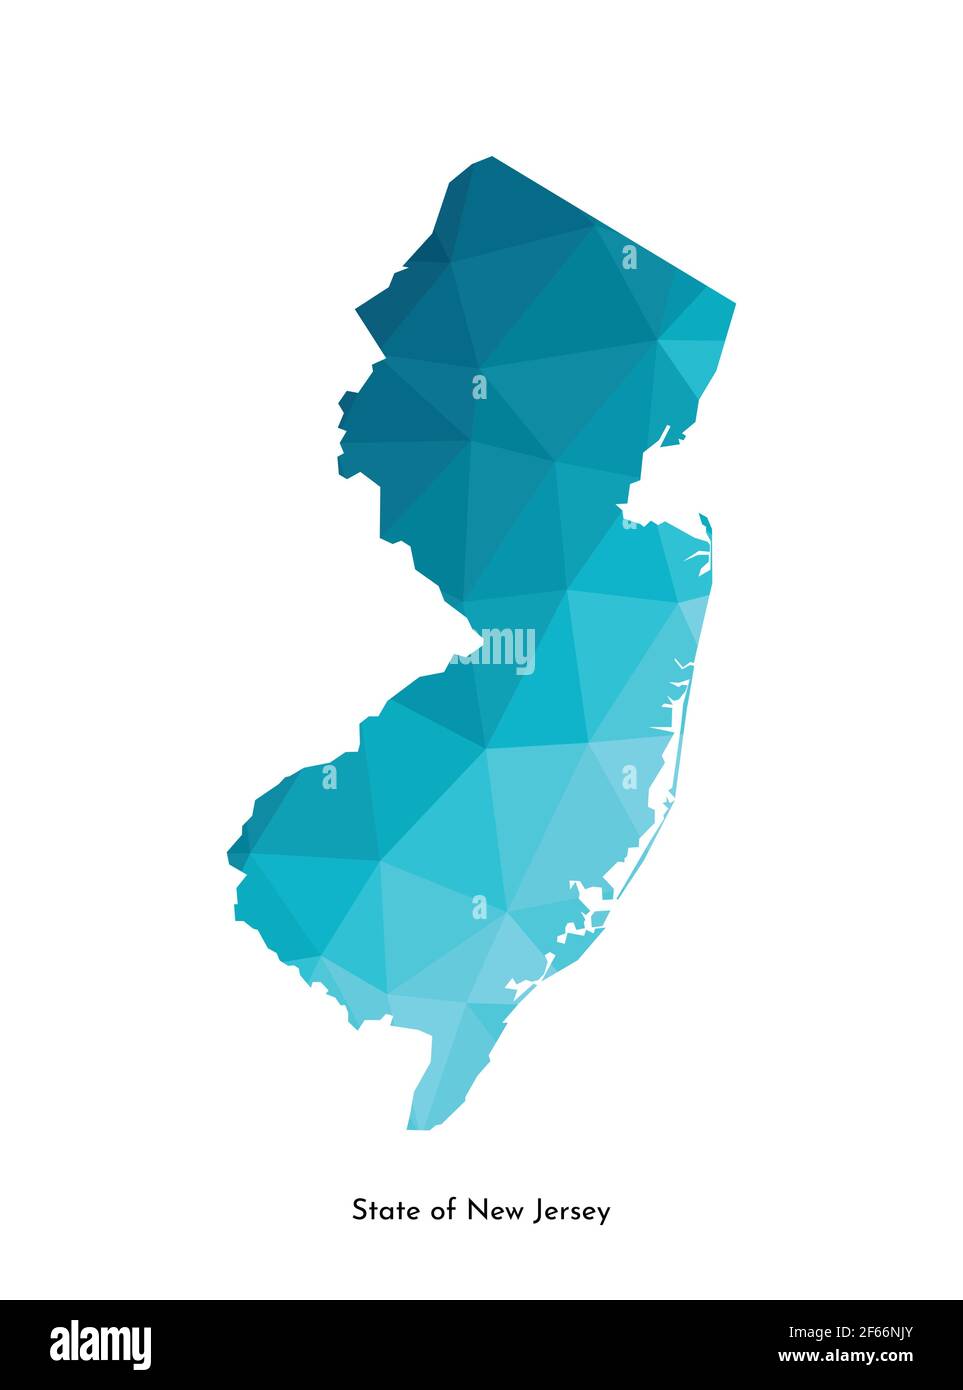 Vektor isolierte Illustration Symbol mit vereinfachten blauen Karte Silhouette des Staates New Jersey (USA). Polygonaler geometrischer Stil. Weißer Hintergrund. Stock Vektor